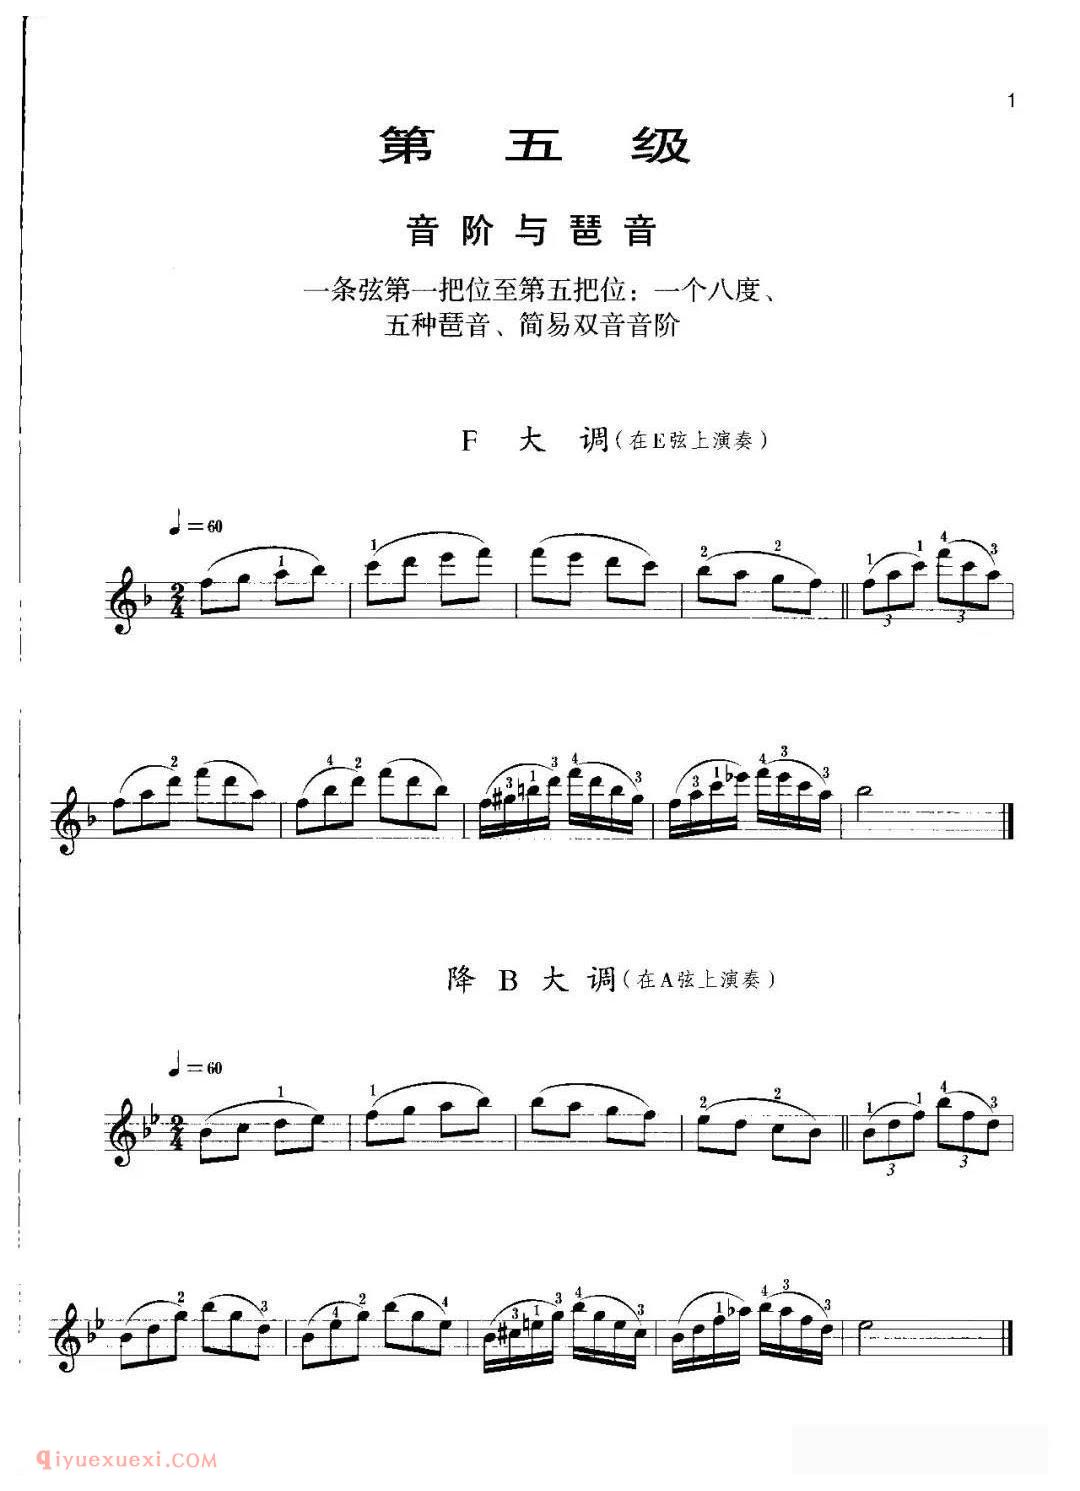 小提琴考级曲谱《五级/音阶与琶音》